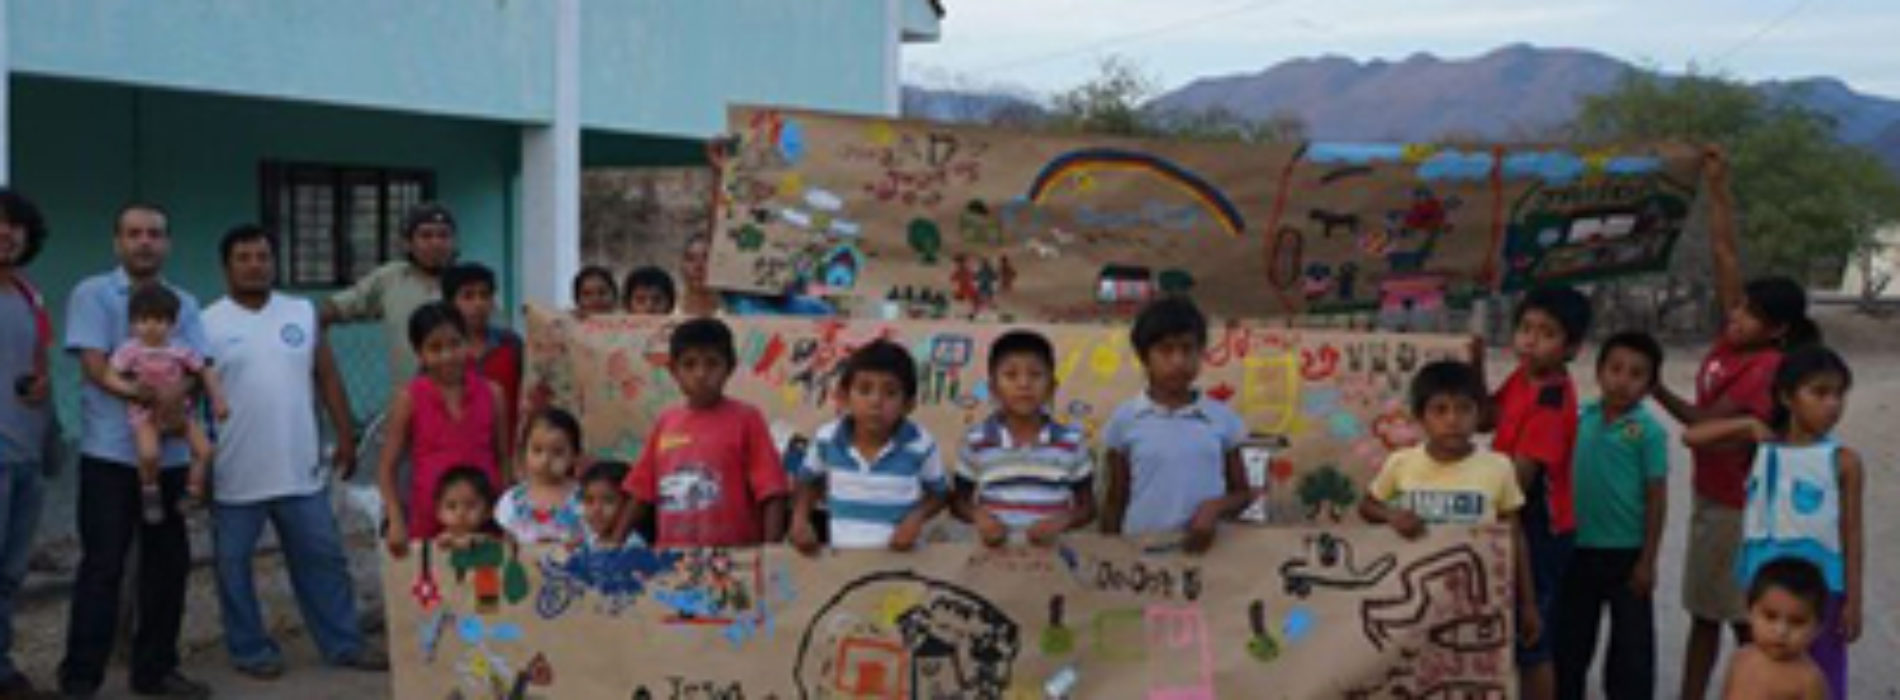 Taller de artes plásticas en Guelache Etla,fomenta valores en los jóvenes